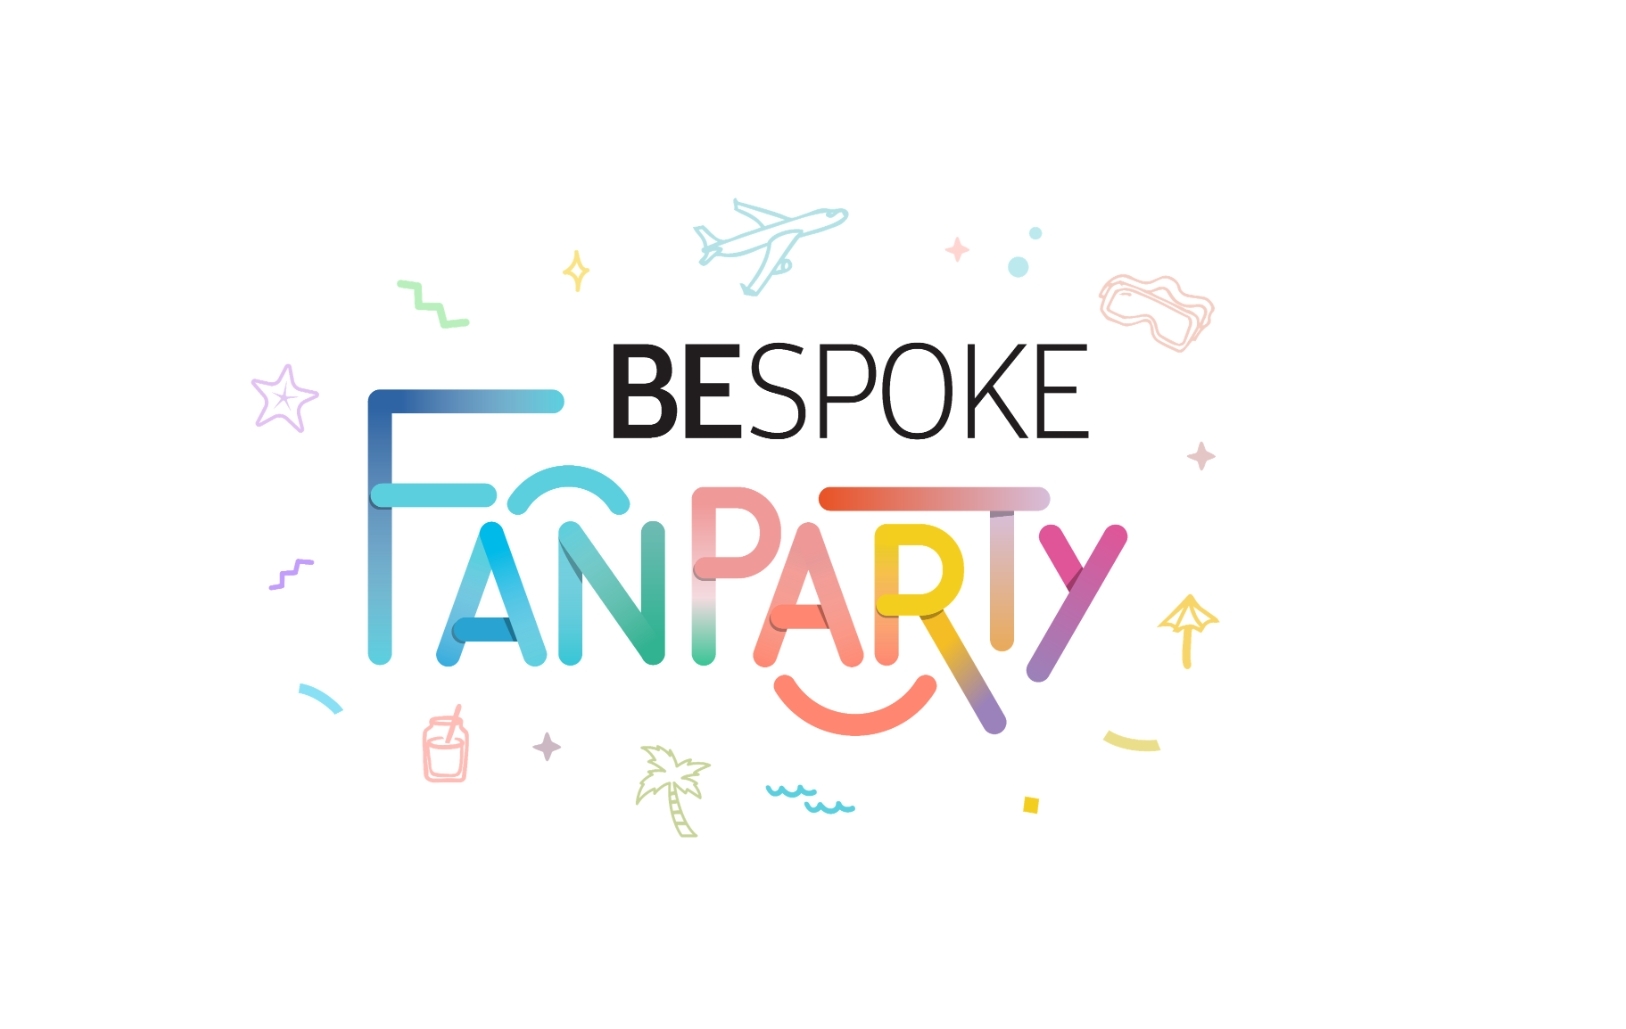 삼성전자가 오는 6월 18일 비스포크 출시 3주년을 기념해 '비스포크 팬파티'를 개최한다. 사진=삼성전자